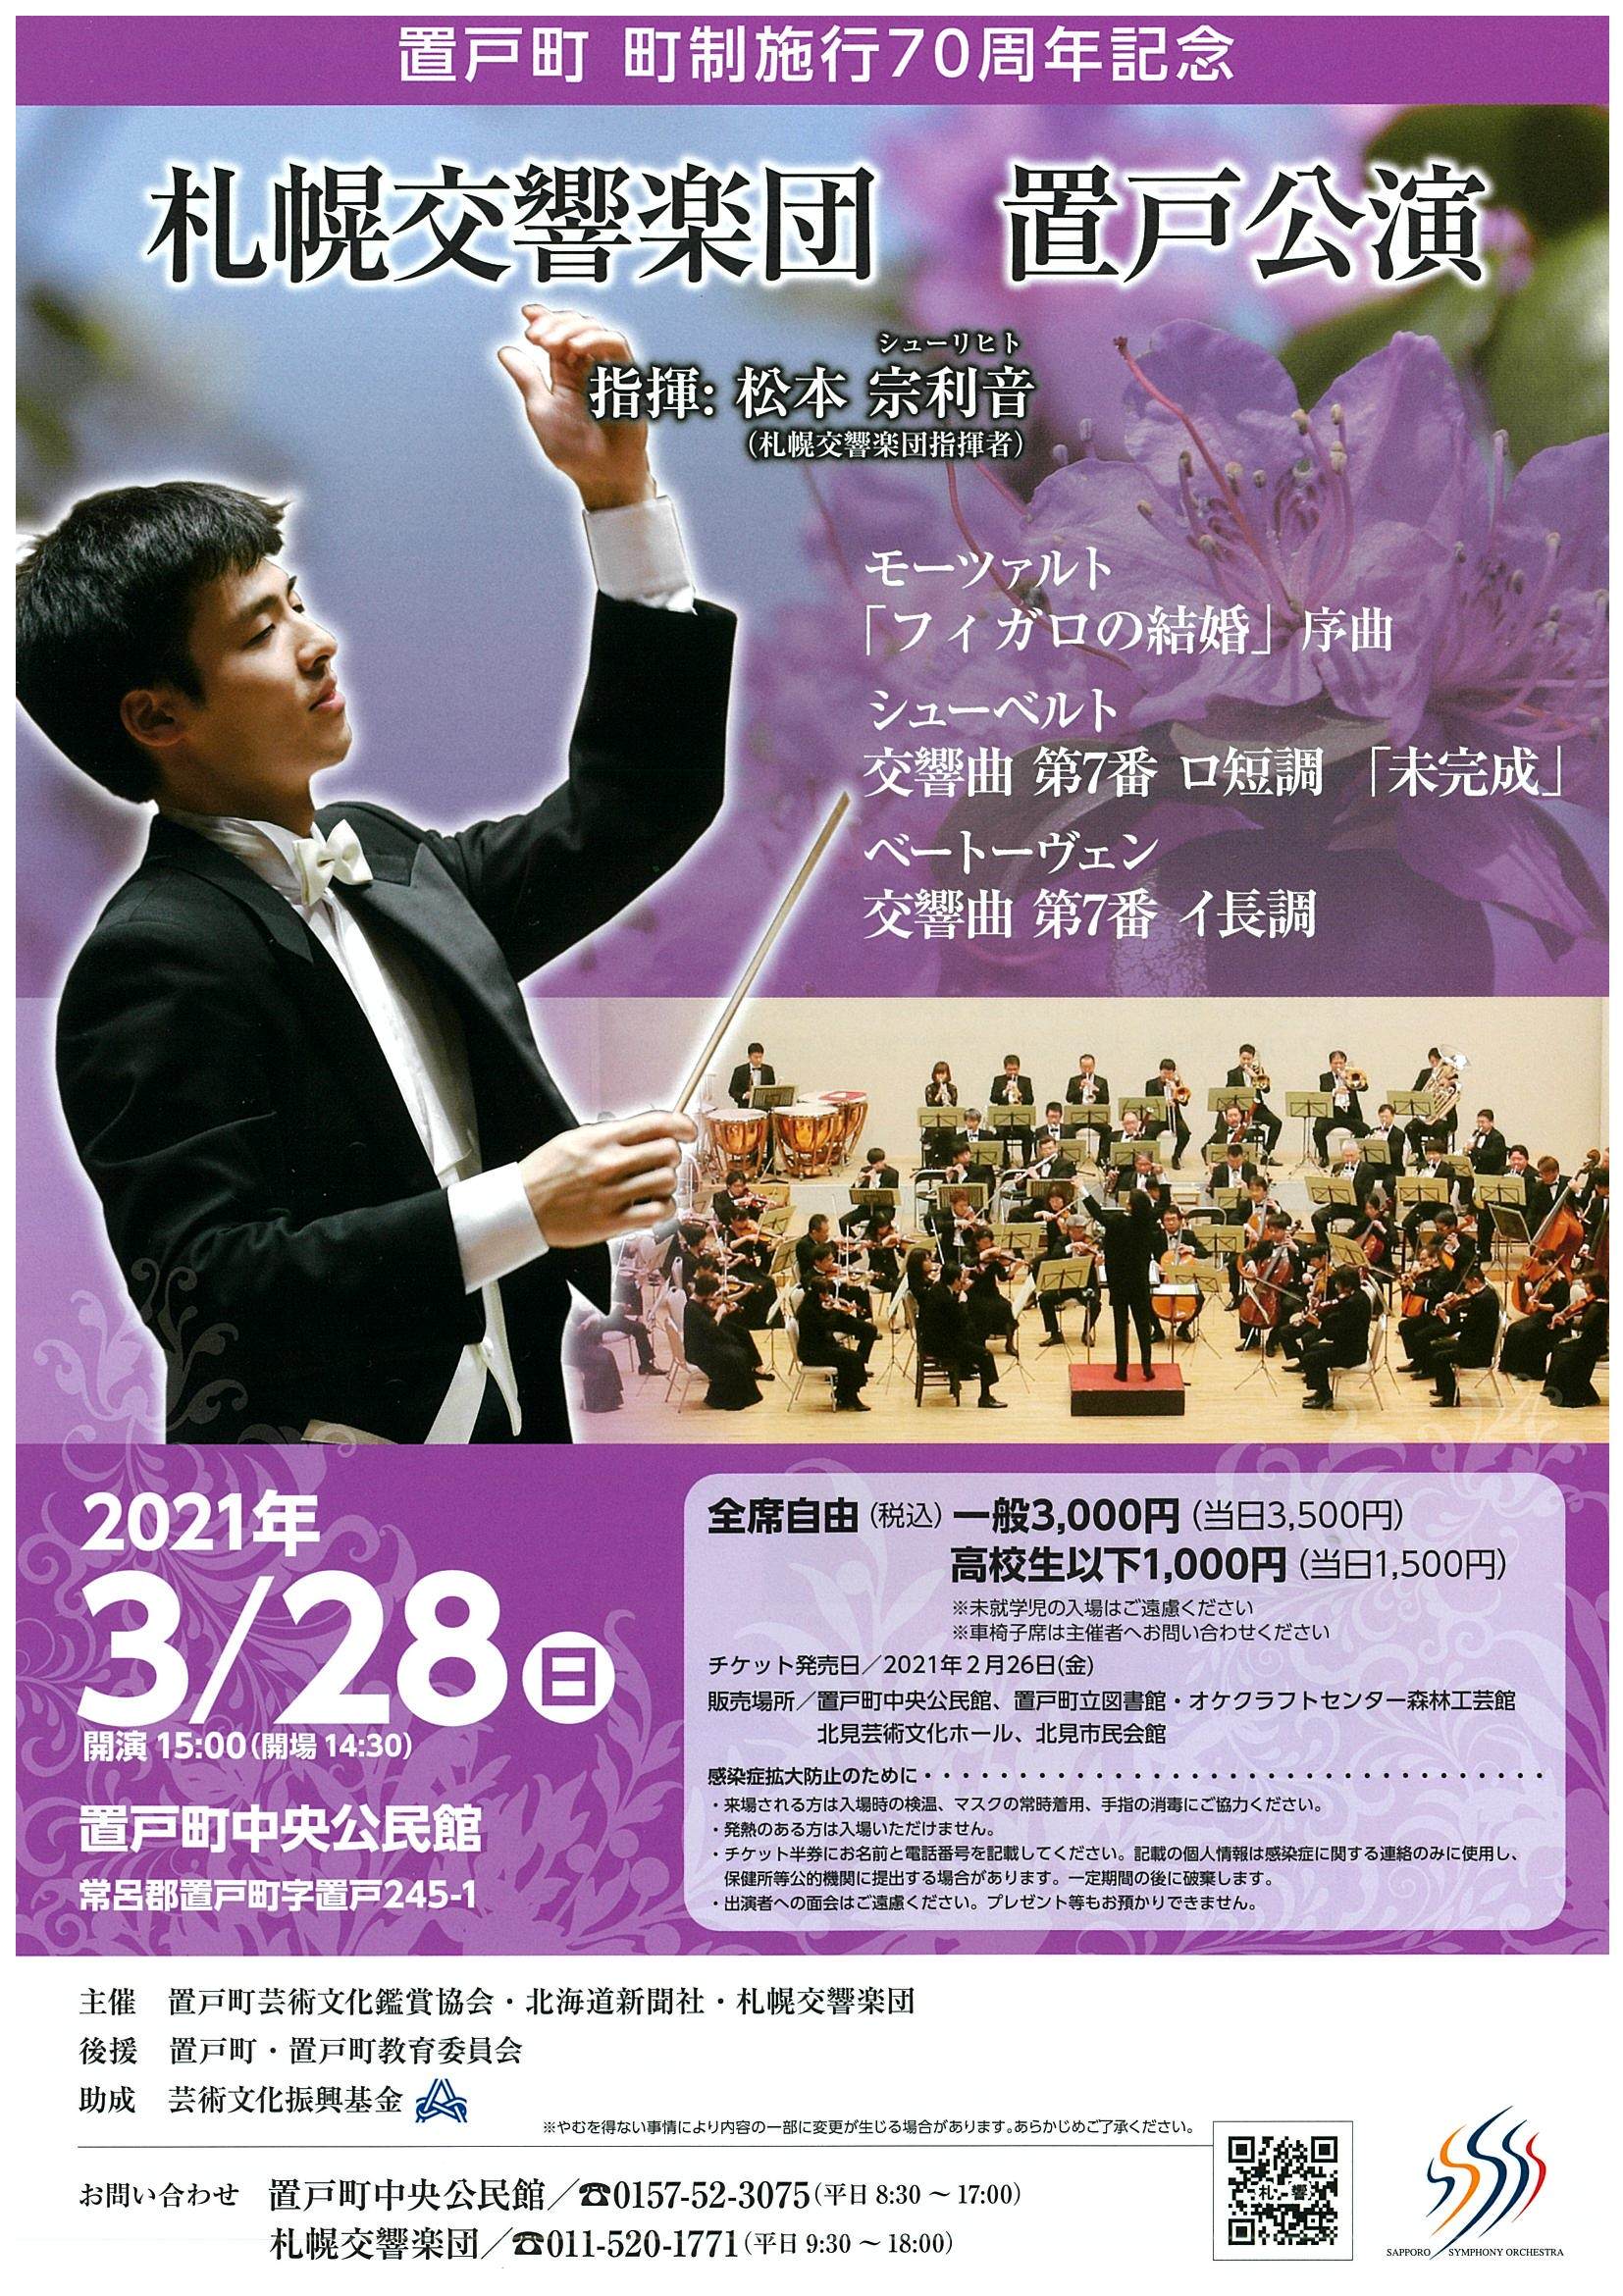 札幌交響楽団 置戸公演 | 札幌交響楽団 Sapporo Symphony Orchestra